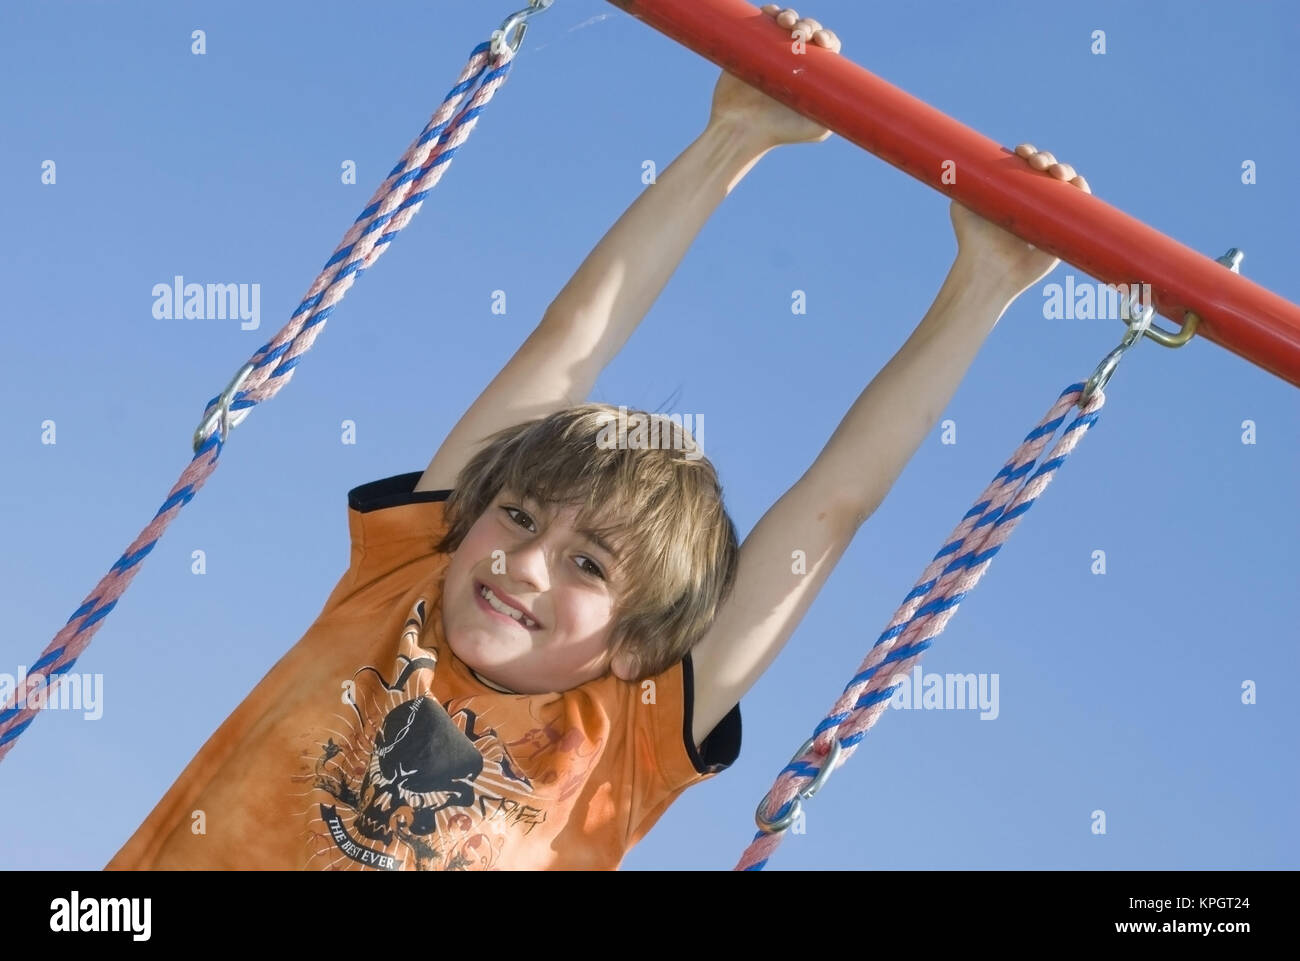 Model released , Junge, 11, spielt am Kinderspielplatz - boy at playground Stock Photo